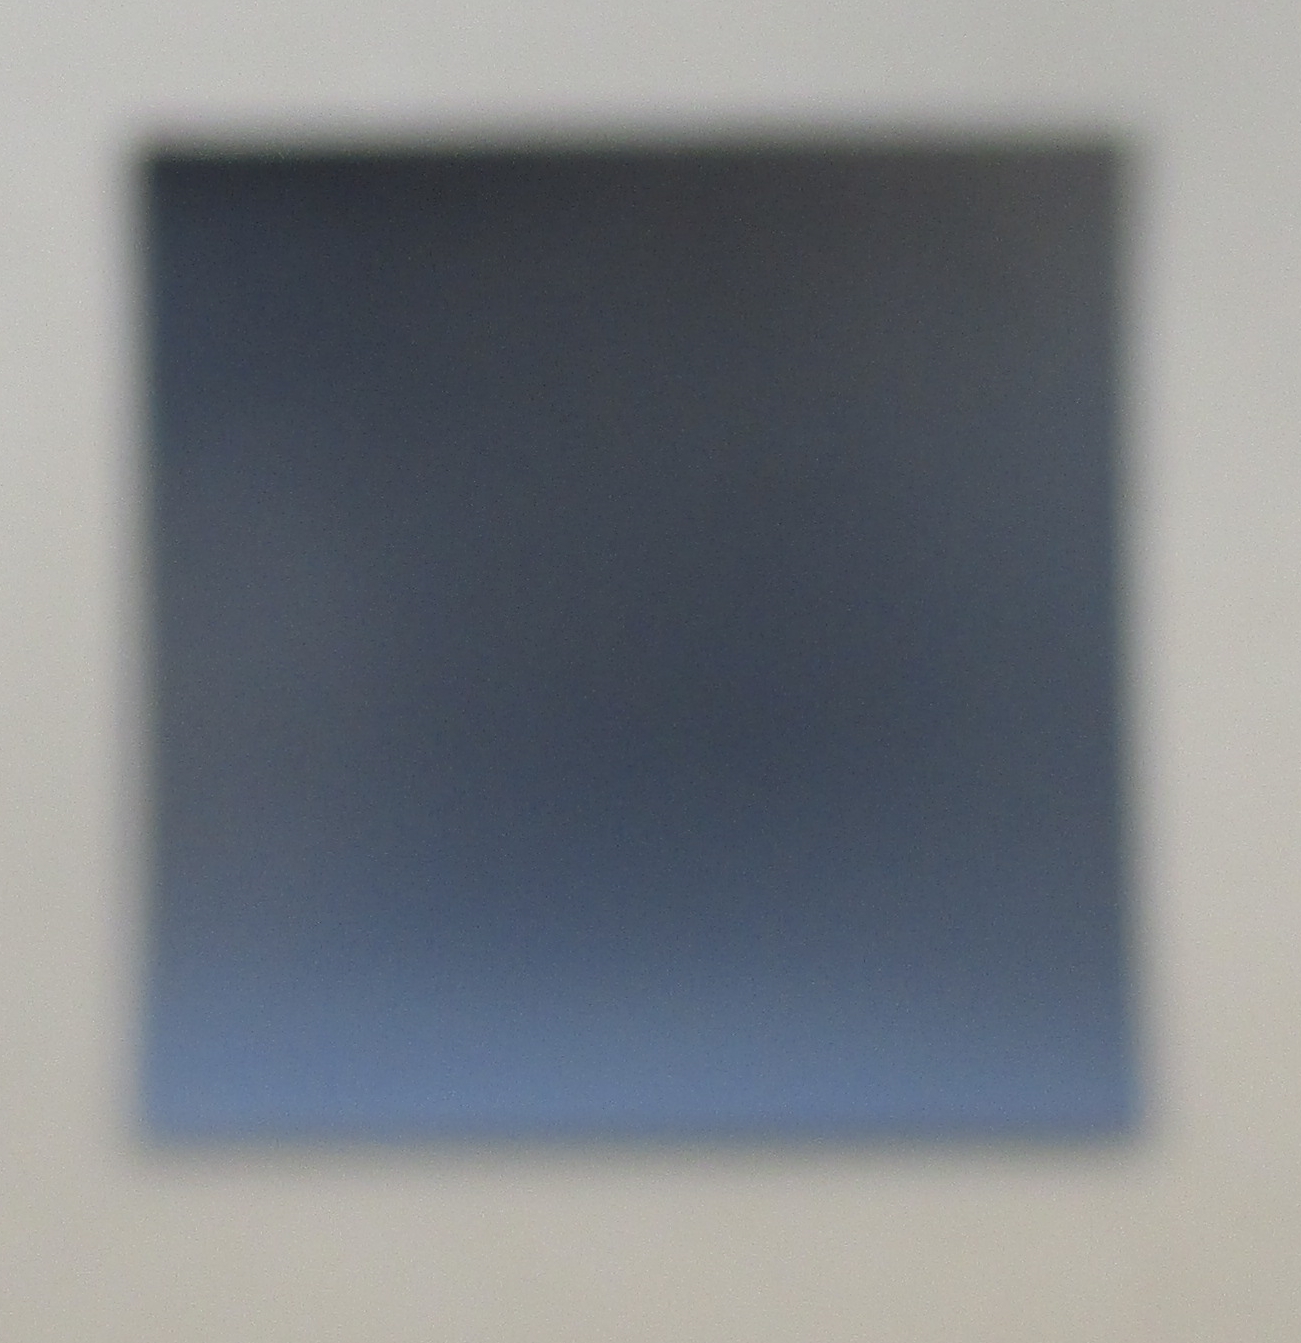 1x abstrakt blau 10x10 cm auf Magnet gedruckt - signiert/x/10 numeriert kostenloser Versand 9